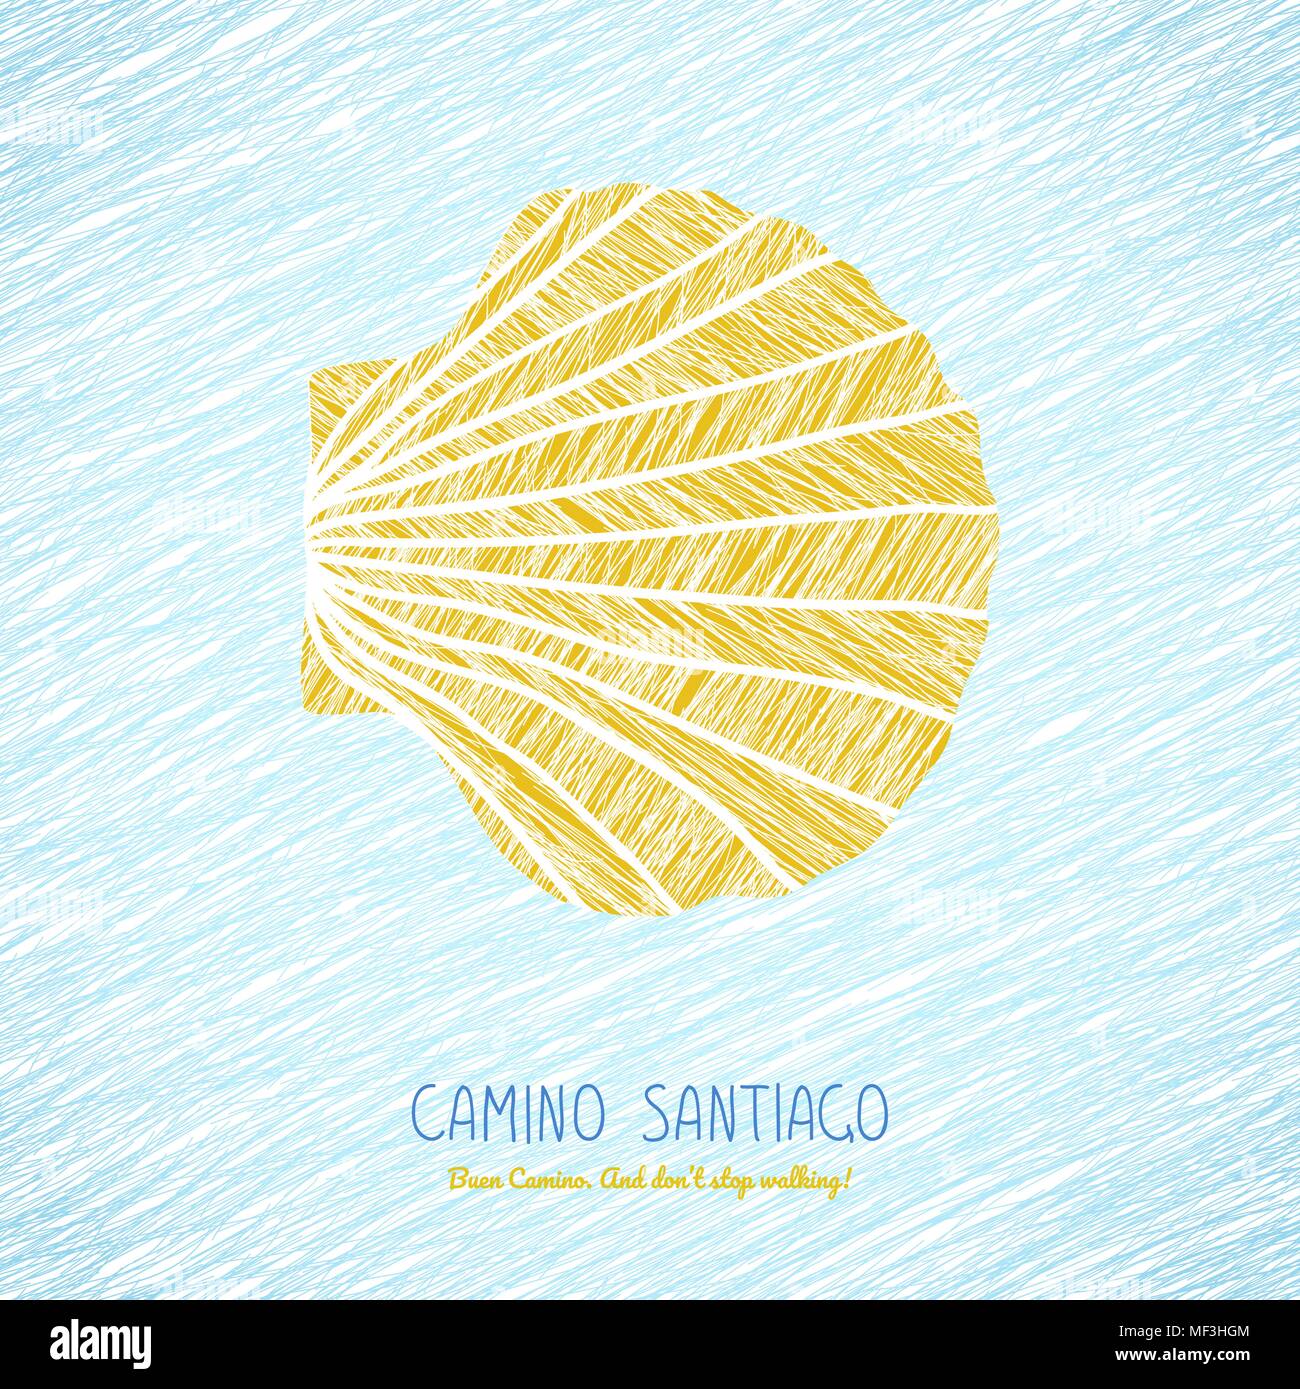 Gelbe Jakobsmuschel. Symbol des Camino de Santiago in Spanien. Buen Camino! Nicht zu stoppen. Poster oder Flyer. Hellen Hintergrund. Pilgrim's navigat Stock Vektor